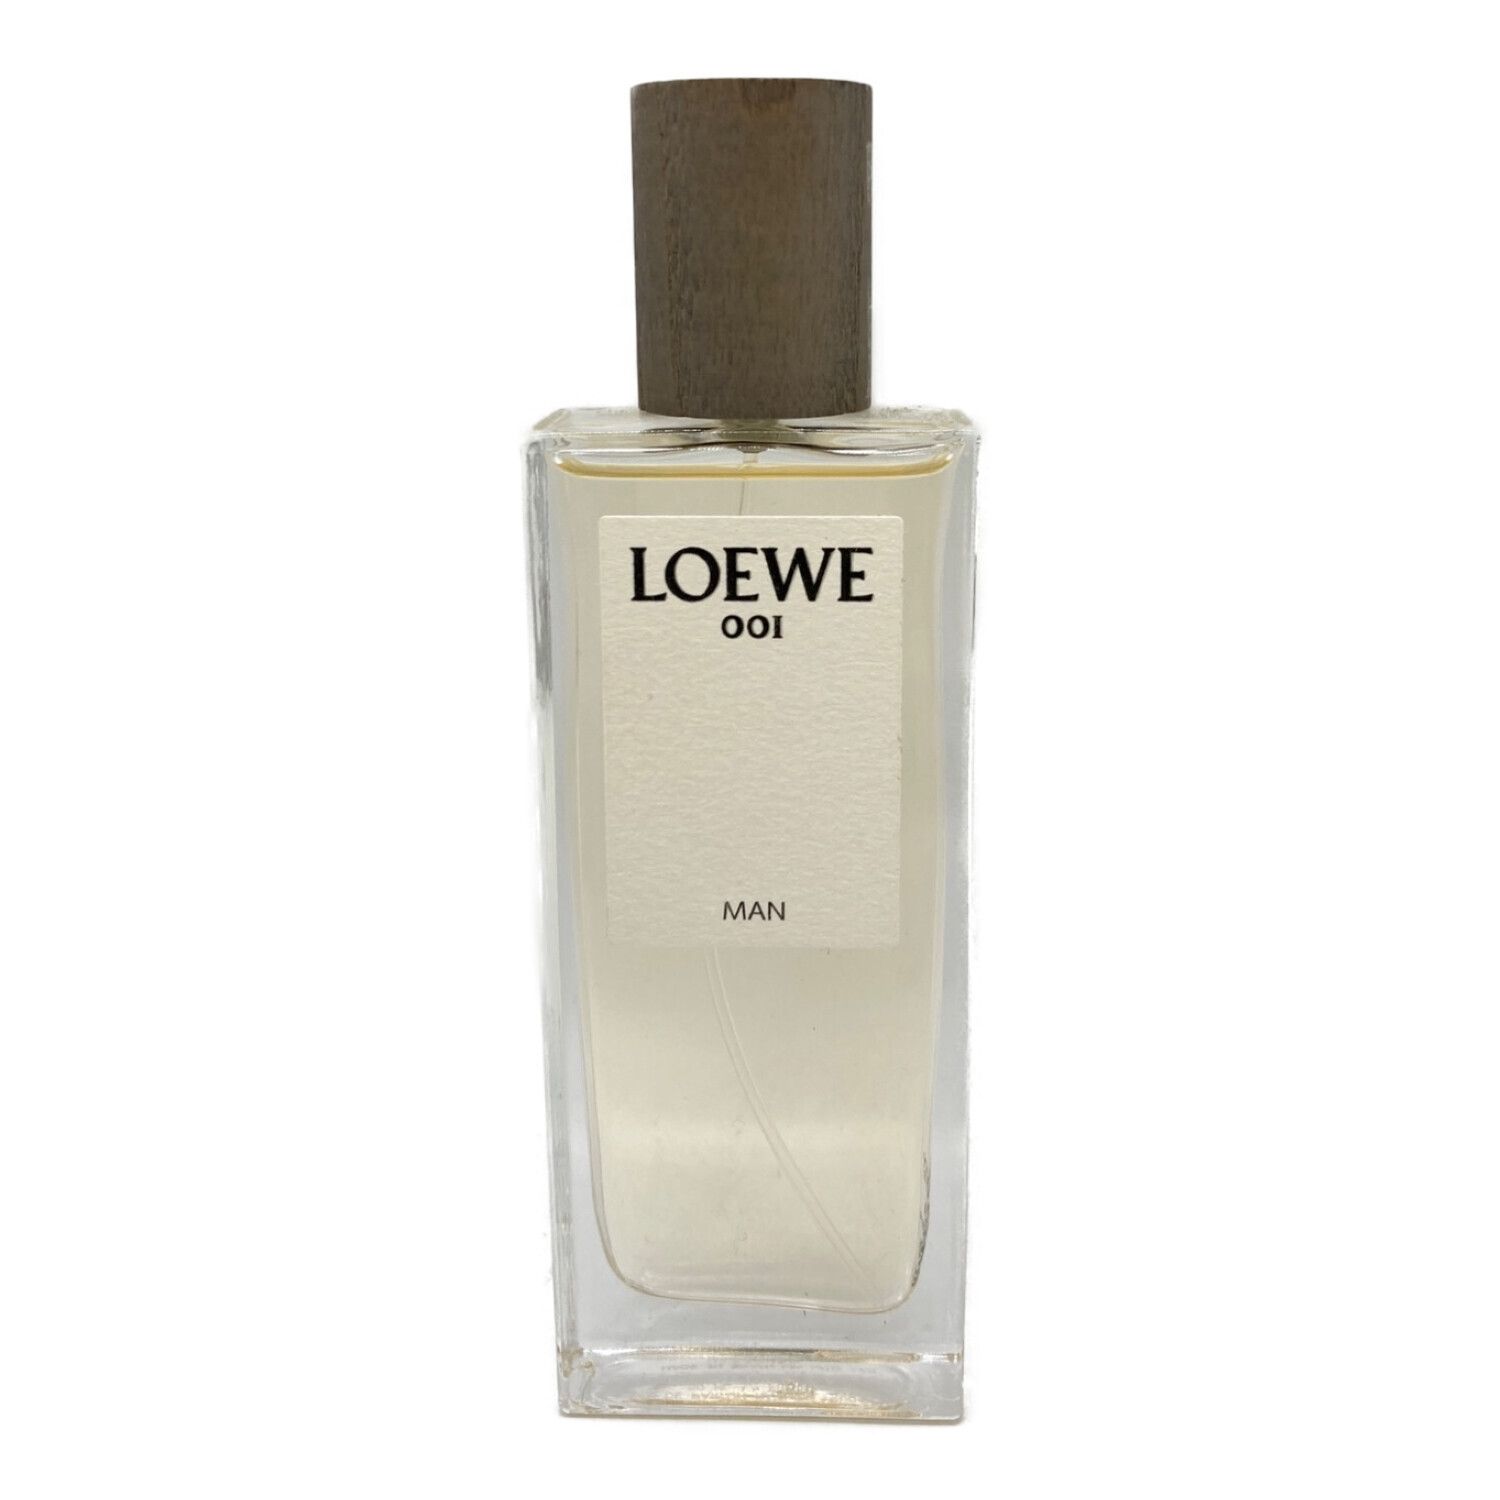 LOEWE (ロエベ) 香水 ロエベ 001 マン オードゥ パルファム 50ml